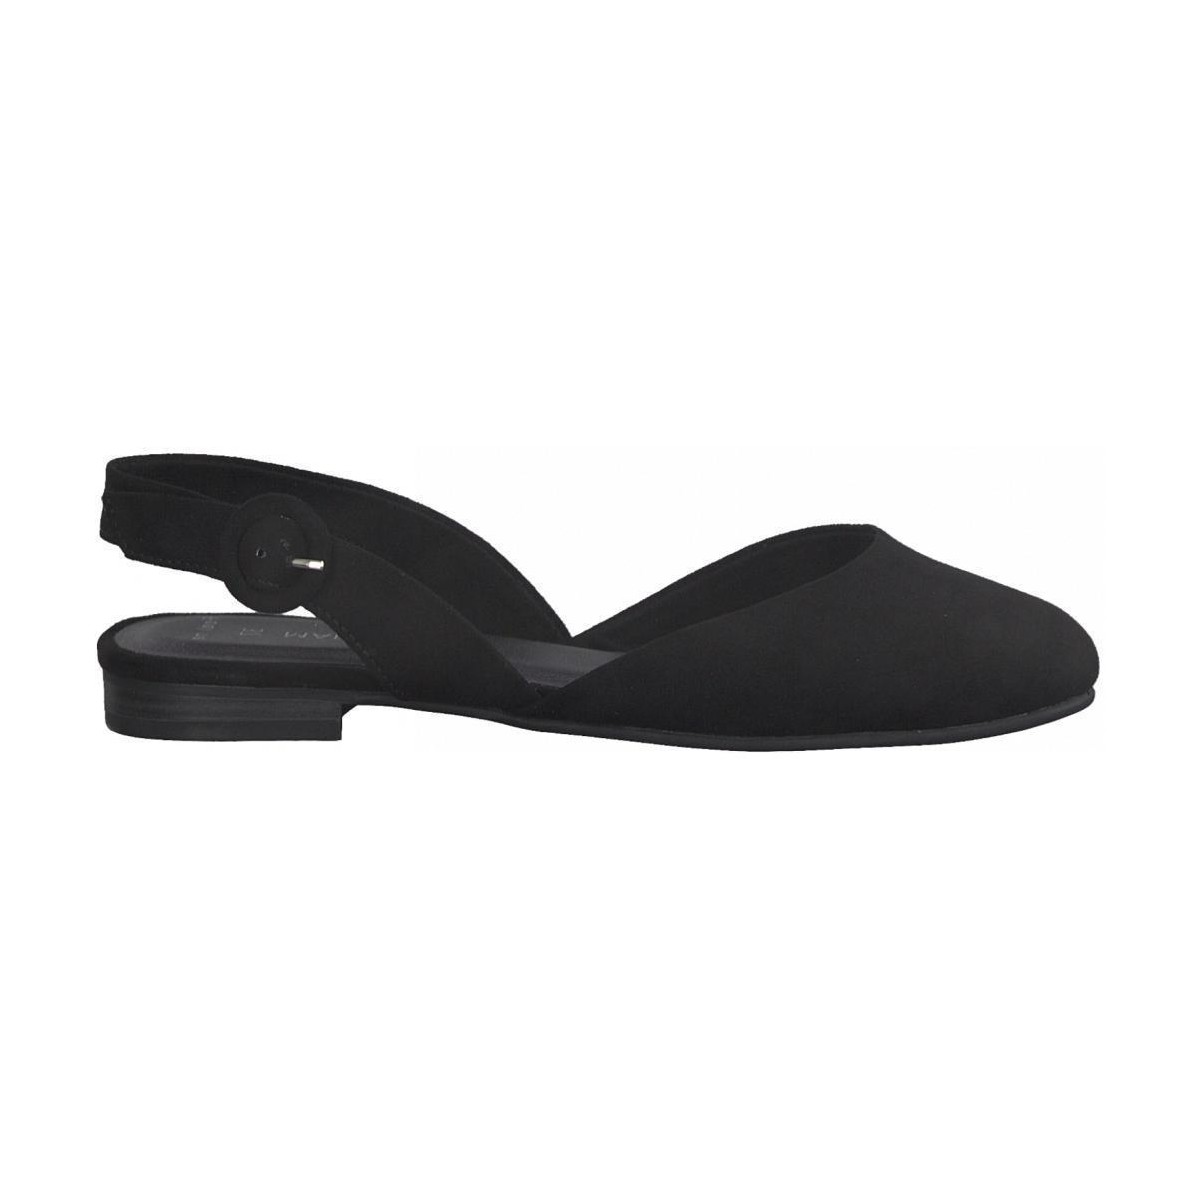 Chaussures Femme Sandales sport Marco Tozzi Black Casual Low Heel Sandals Noir